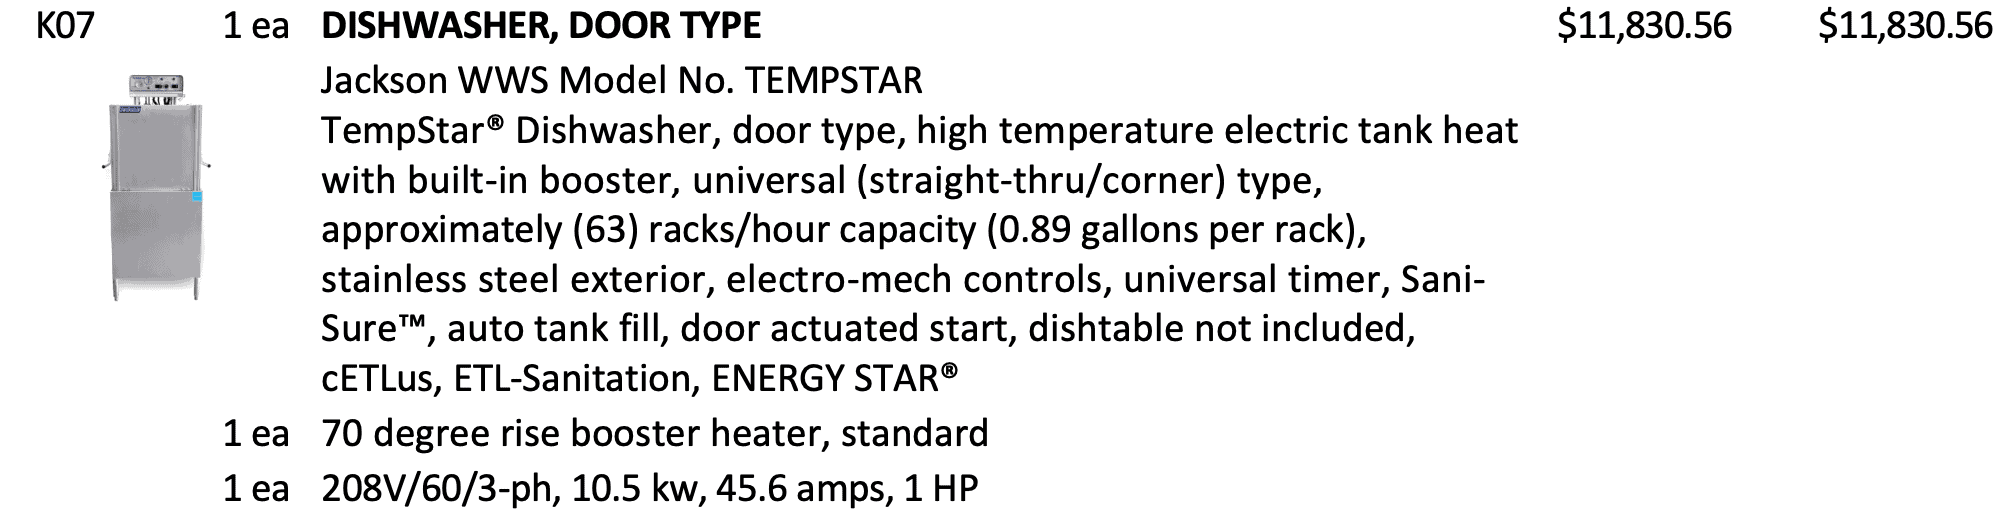 Dishwasher, Door Type